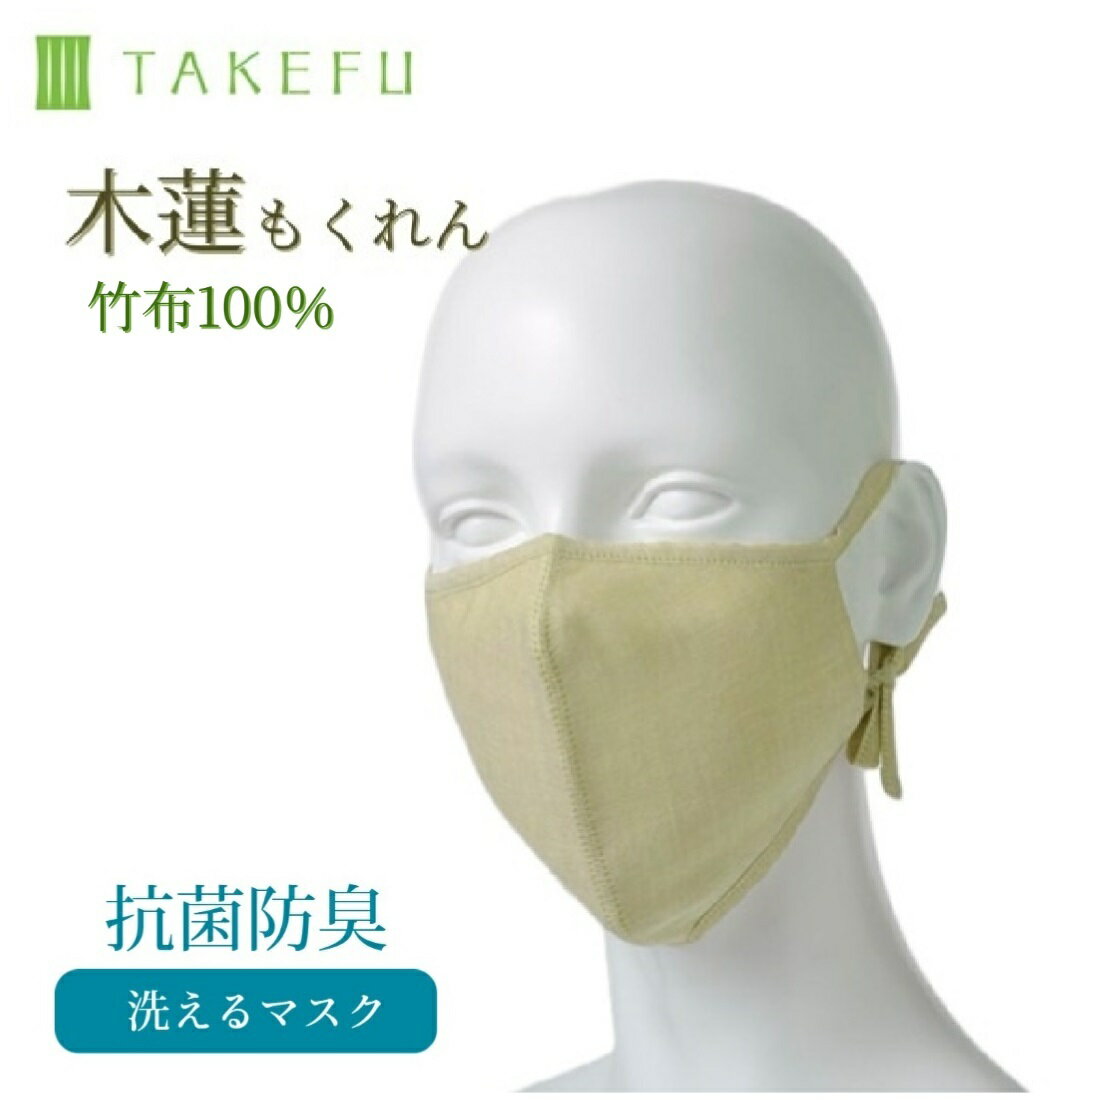 竹布 マスク TAKEFU うるおいマスク 布マスク 木蓮 もくれん